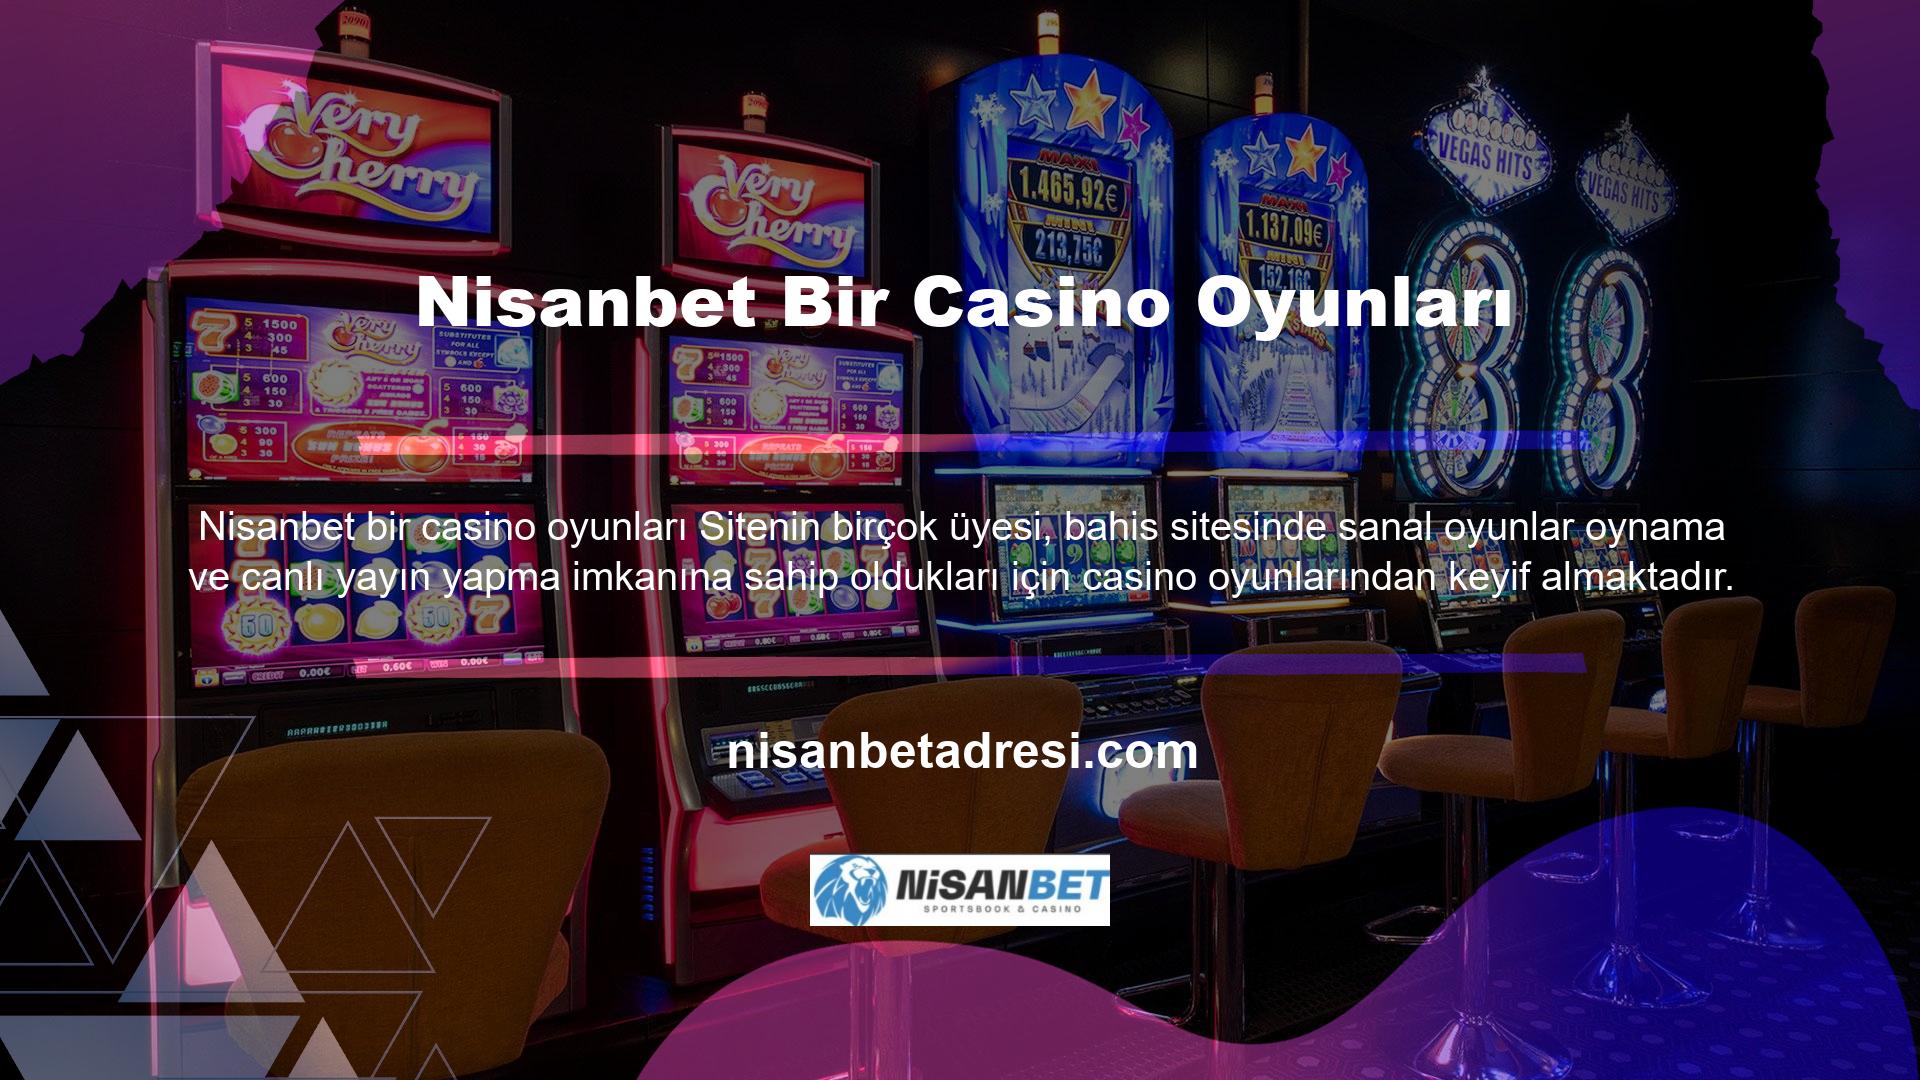 Yüksek faiz oranları ve bahis sitesinin altyapısı ile site üyeleri canlı casino oyunlarında kaliteli ve güvenilir bahis bekleyebilirler